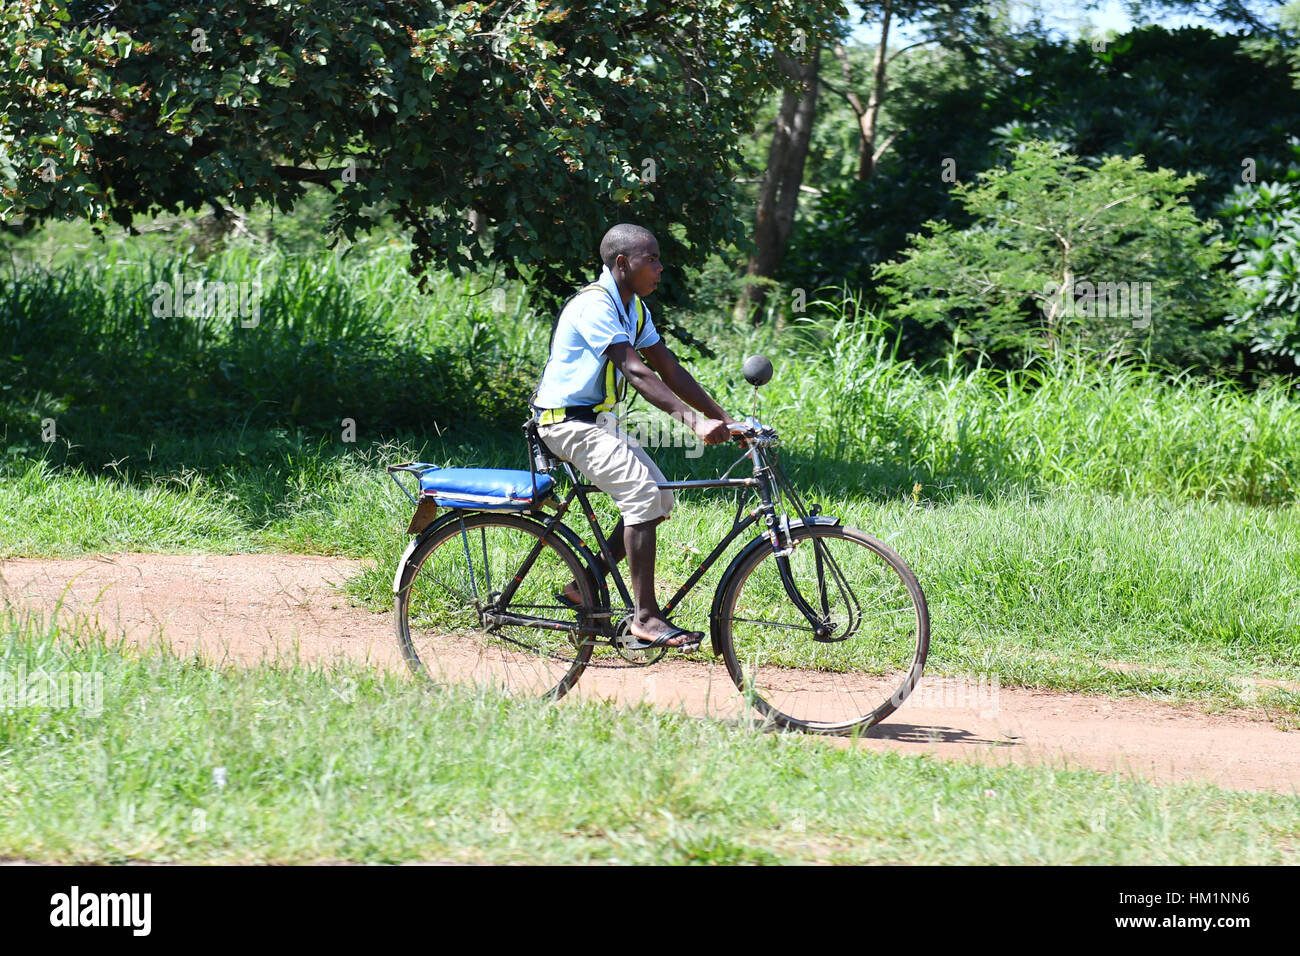 Lilongwe, Malawi. 30 gen, 2017. Una bicicletta taxi driver cavalca la sua bicicletta a Lilongwe, Malawi, Gennaio 30, 2017. Noleggio Taxi offrire alle persone che non possono permettersi un taxi o minibus un più economico mezzo di trasporto in Malawi. Si possono percorrere molti chilometri su vi ammortizzate biciclette per solo 150 Malawi kwacha (Circa 0,2 dollari US). Credito: Sun Ruibo/Xinhua/Alamy Live News Foto Stock